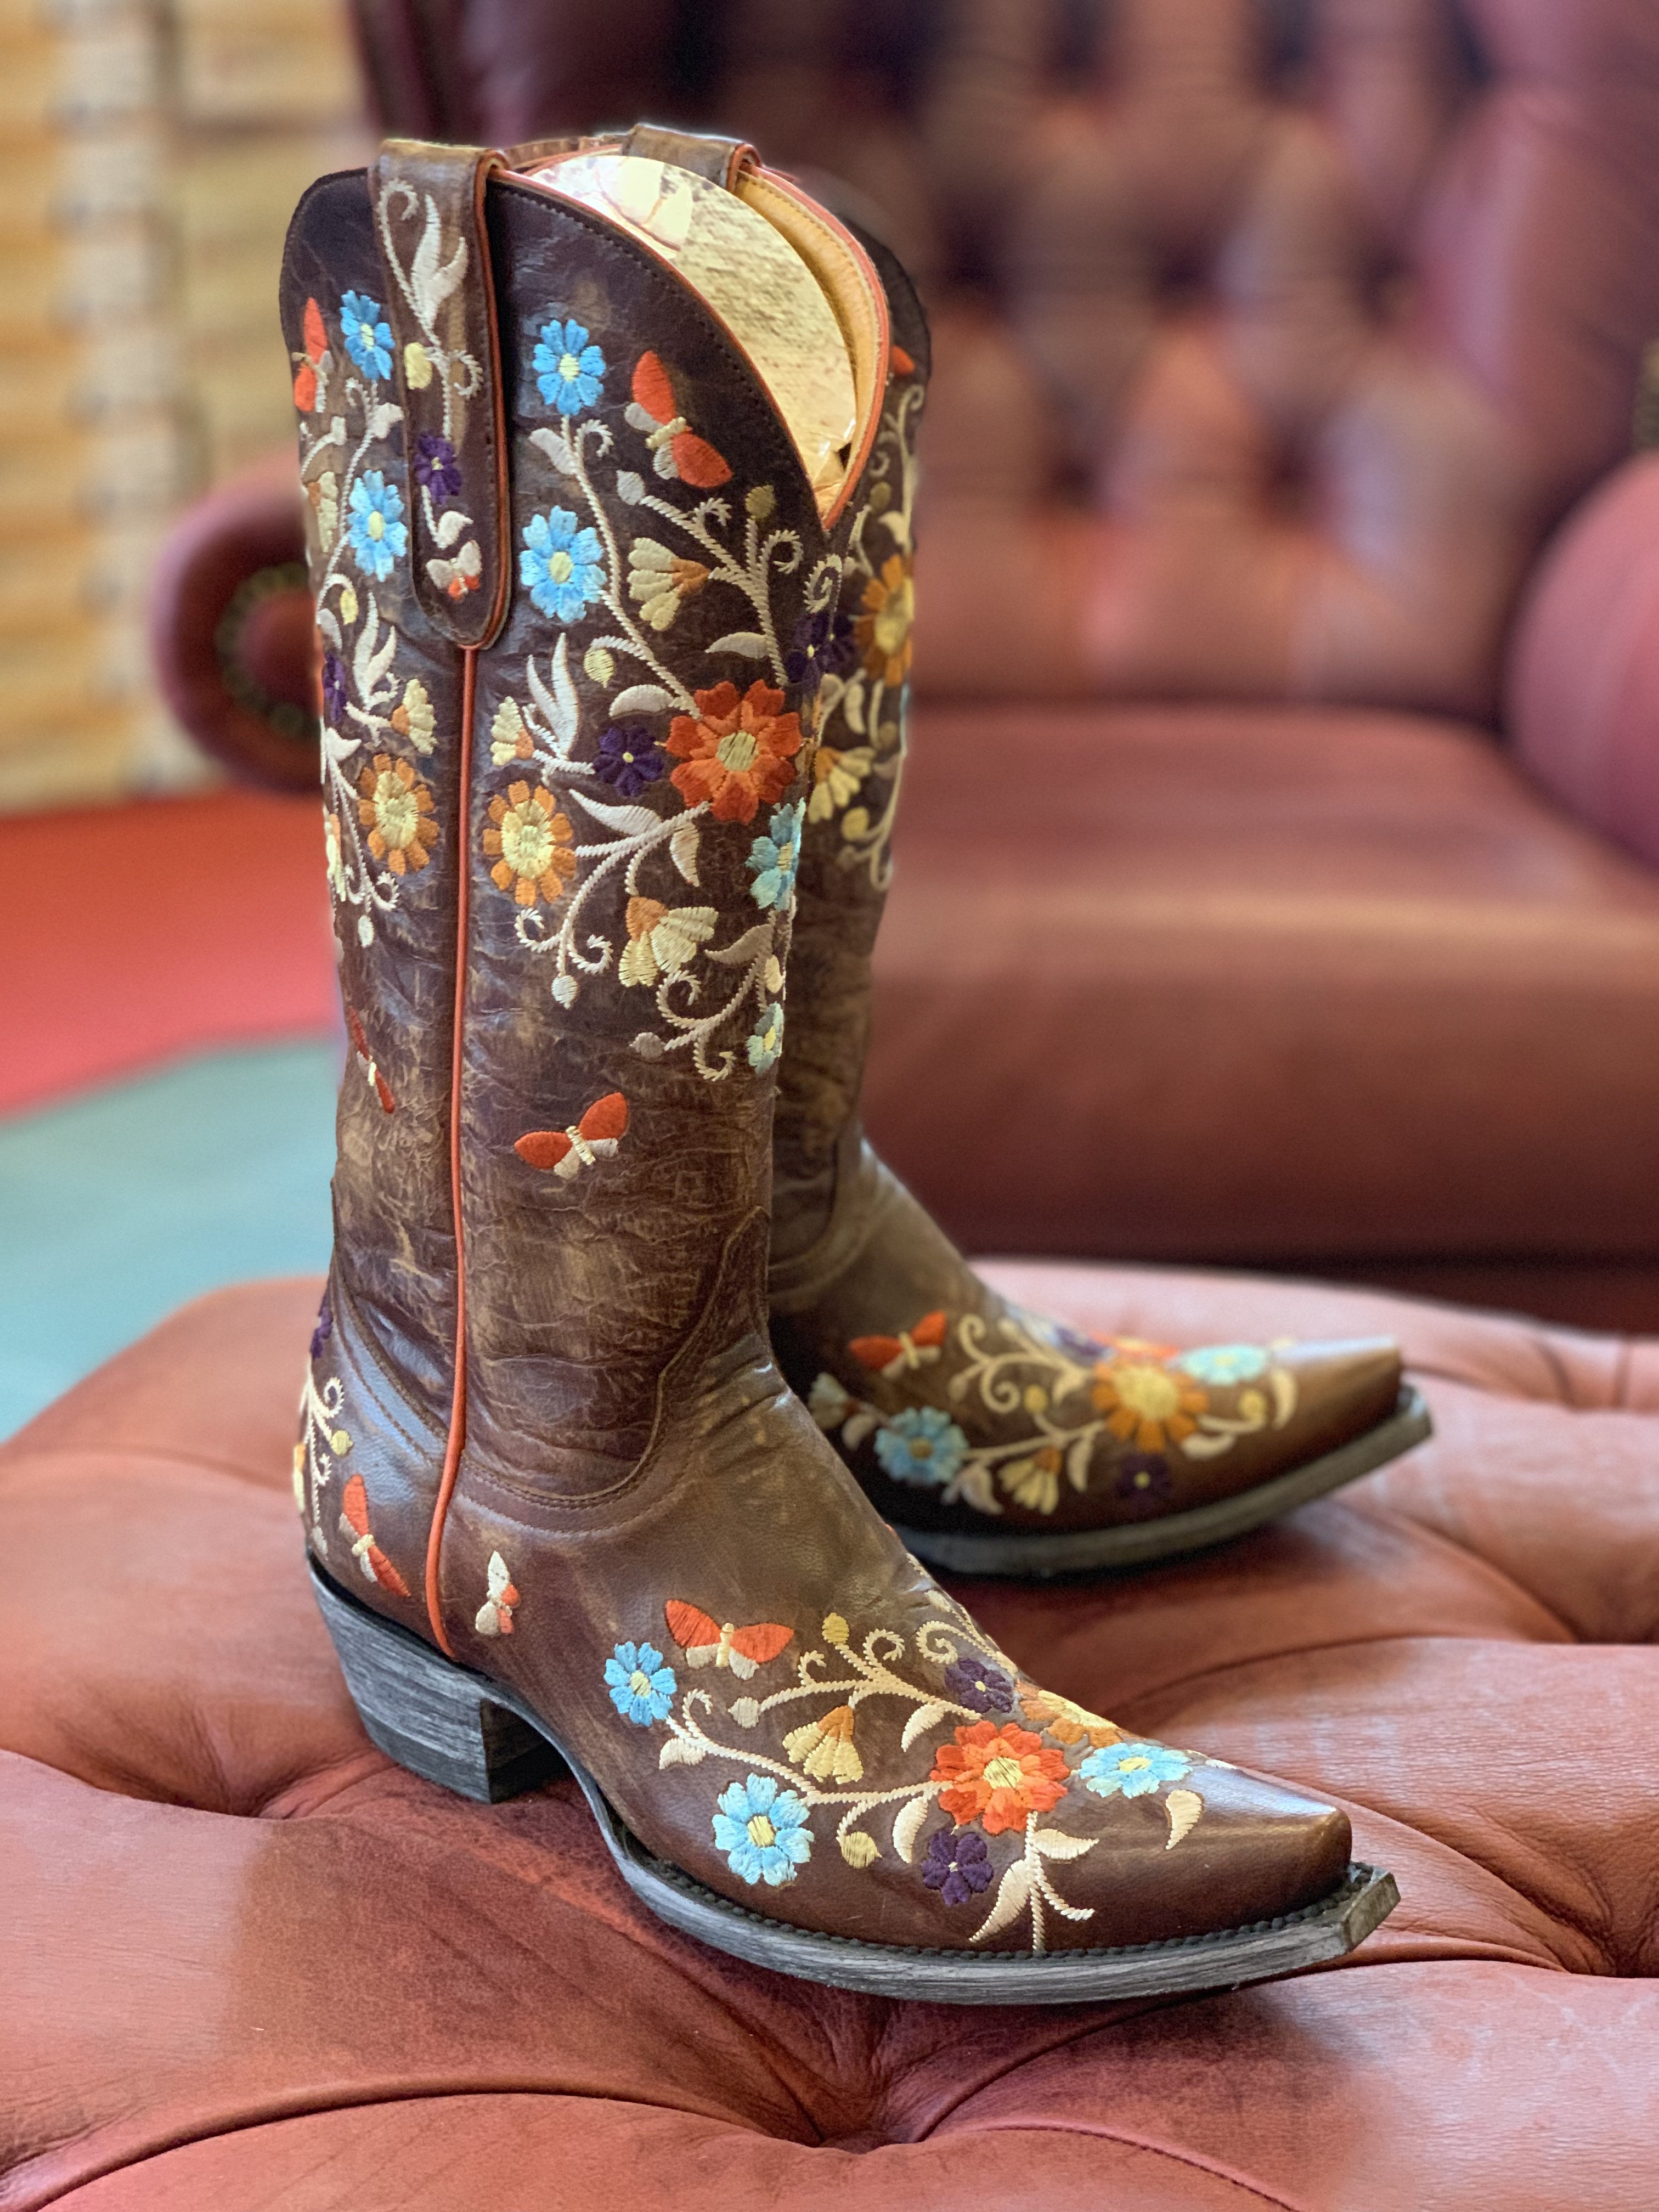 old gringo women's boots sale